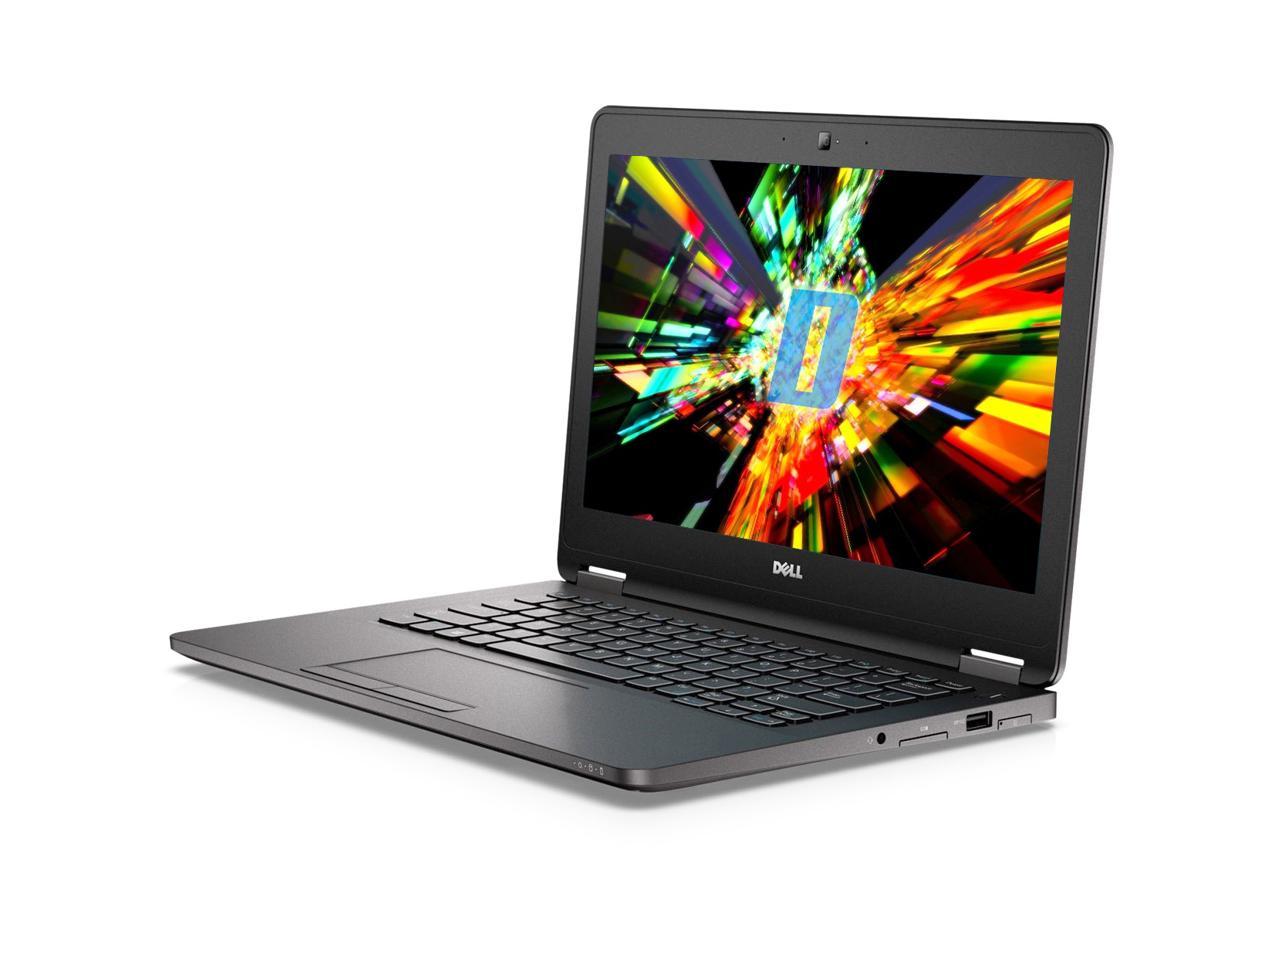 Dell Latitude E7270 12.5" Laptop, Intel Core i5 6300U 2.4Ghz, 8GB DDR4, 128GB M.2 SSD, HDMI, Webcam, Windows 10 Pro x64